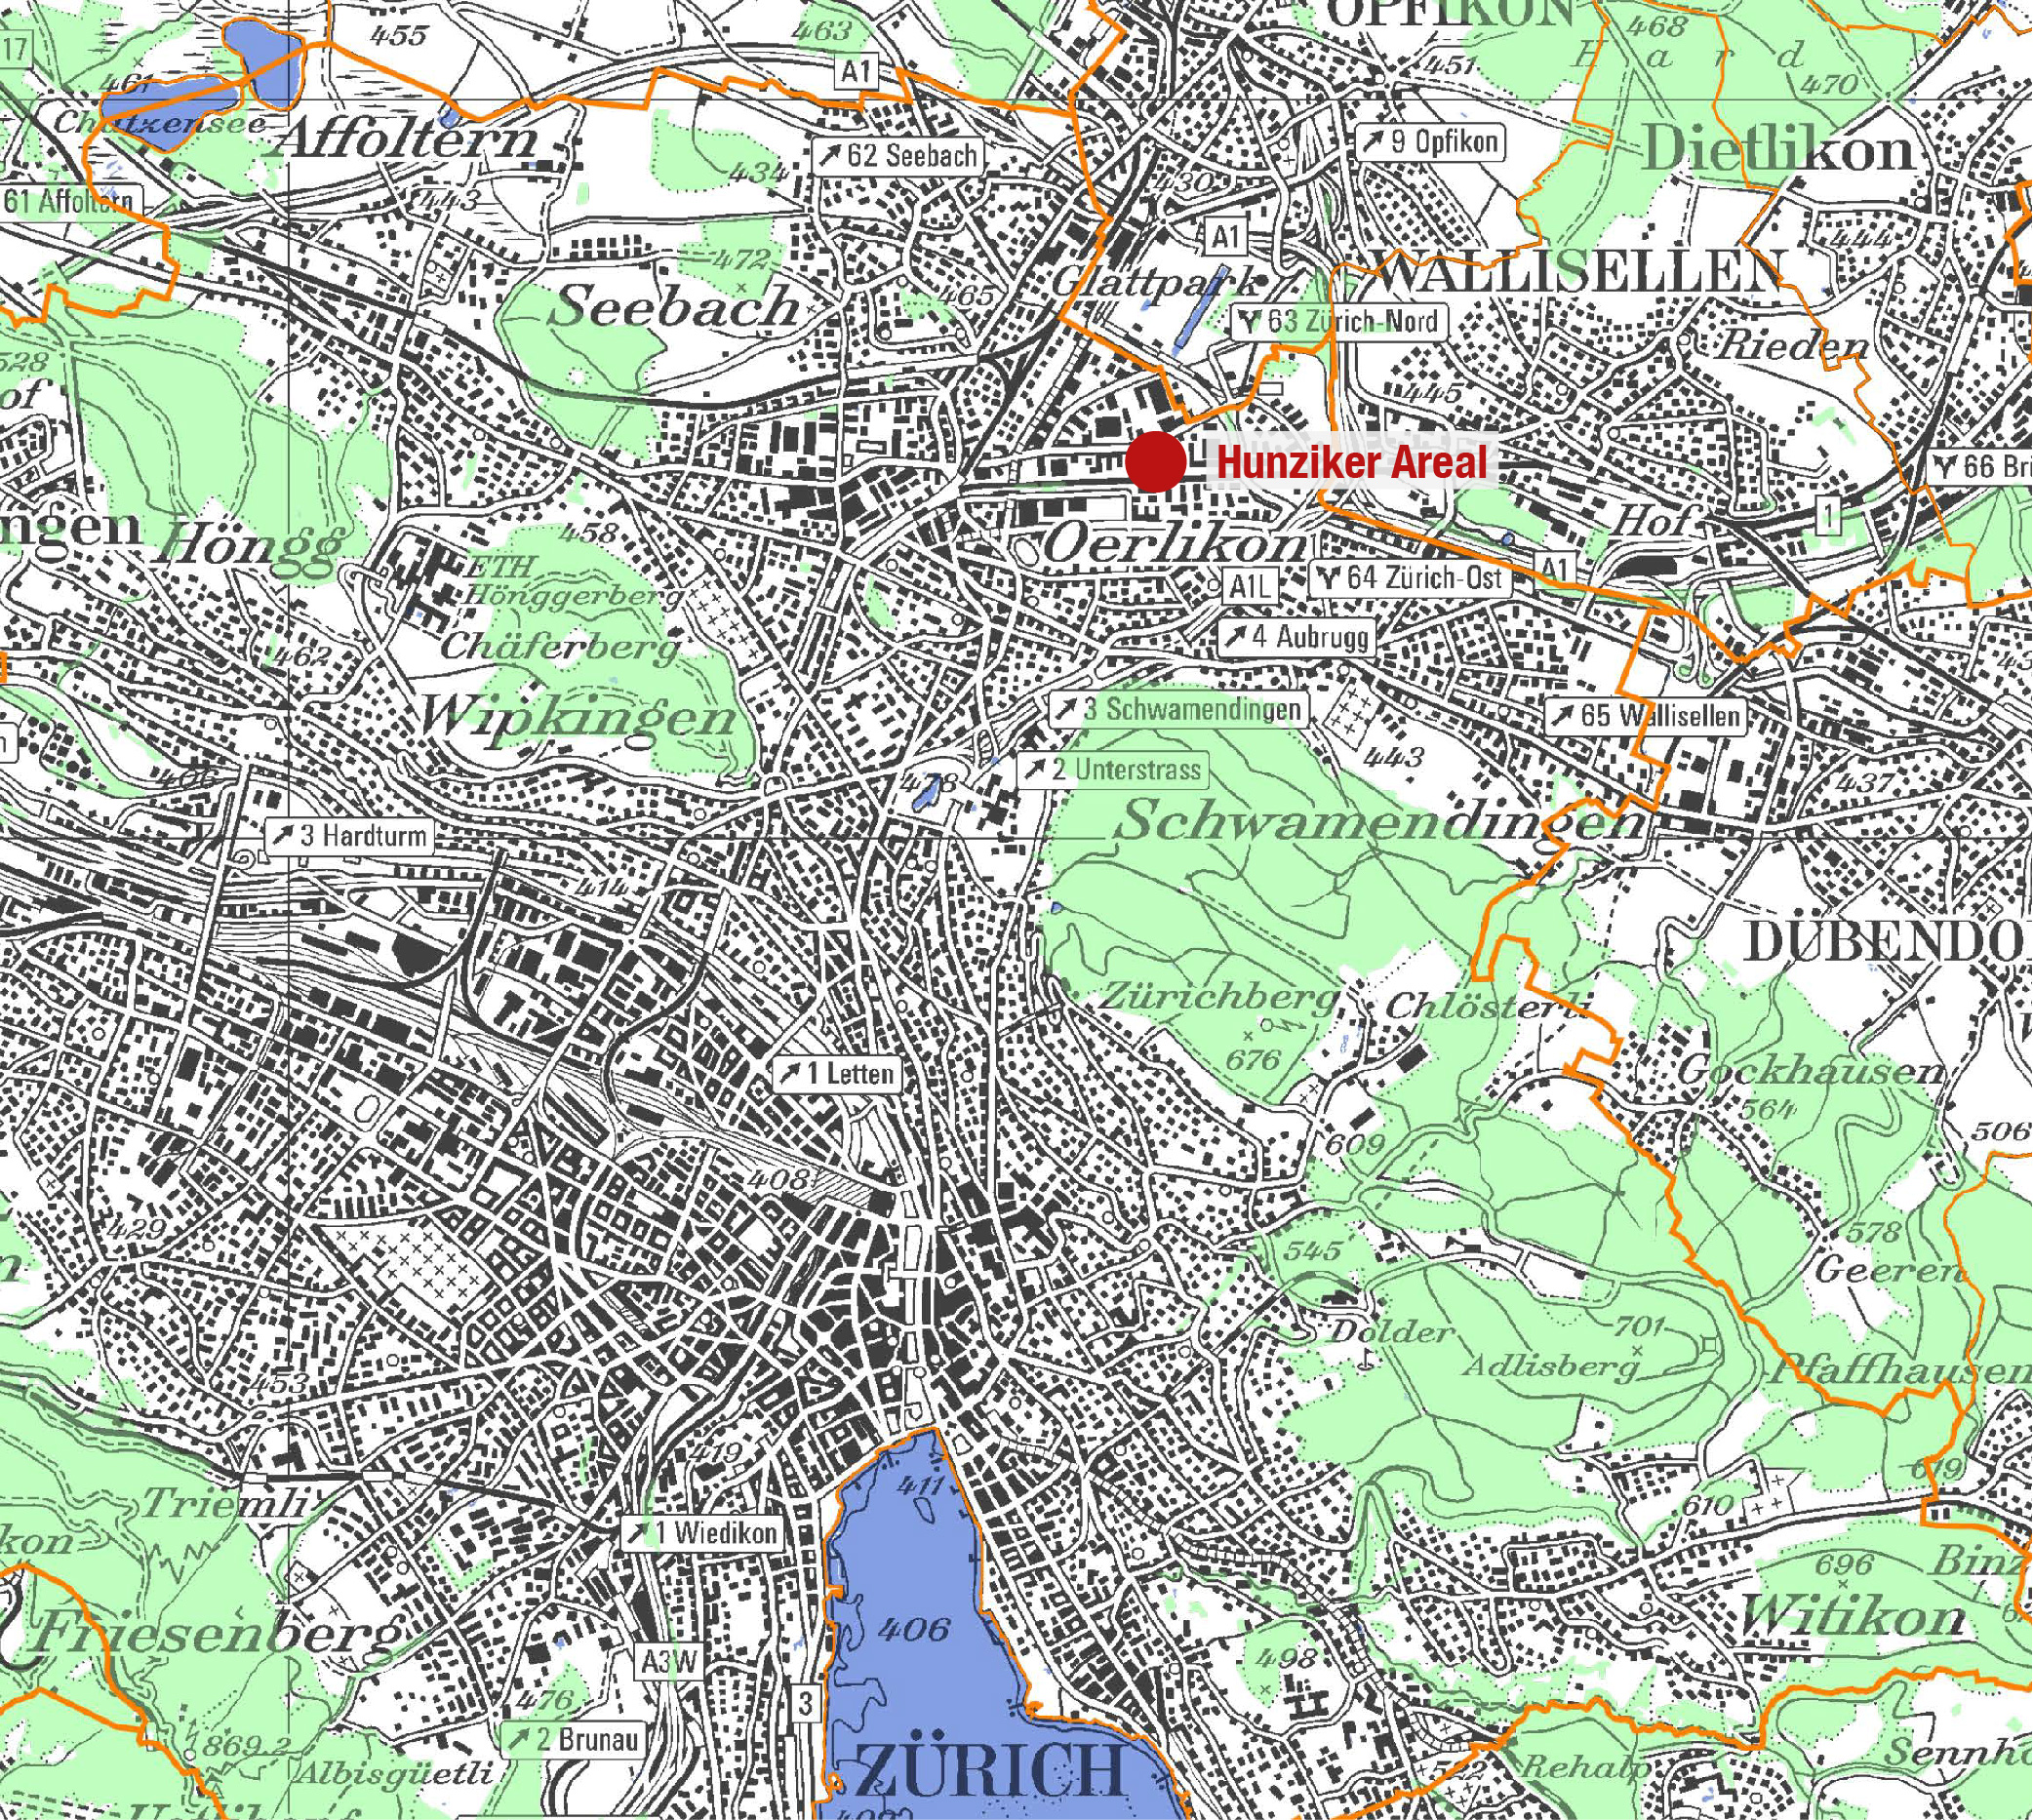 Karte der Stadt Zürich mit Lage des Hunziker-Areals im Nordosten der Stadt.